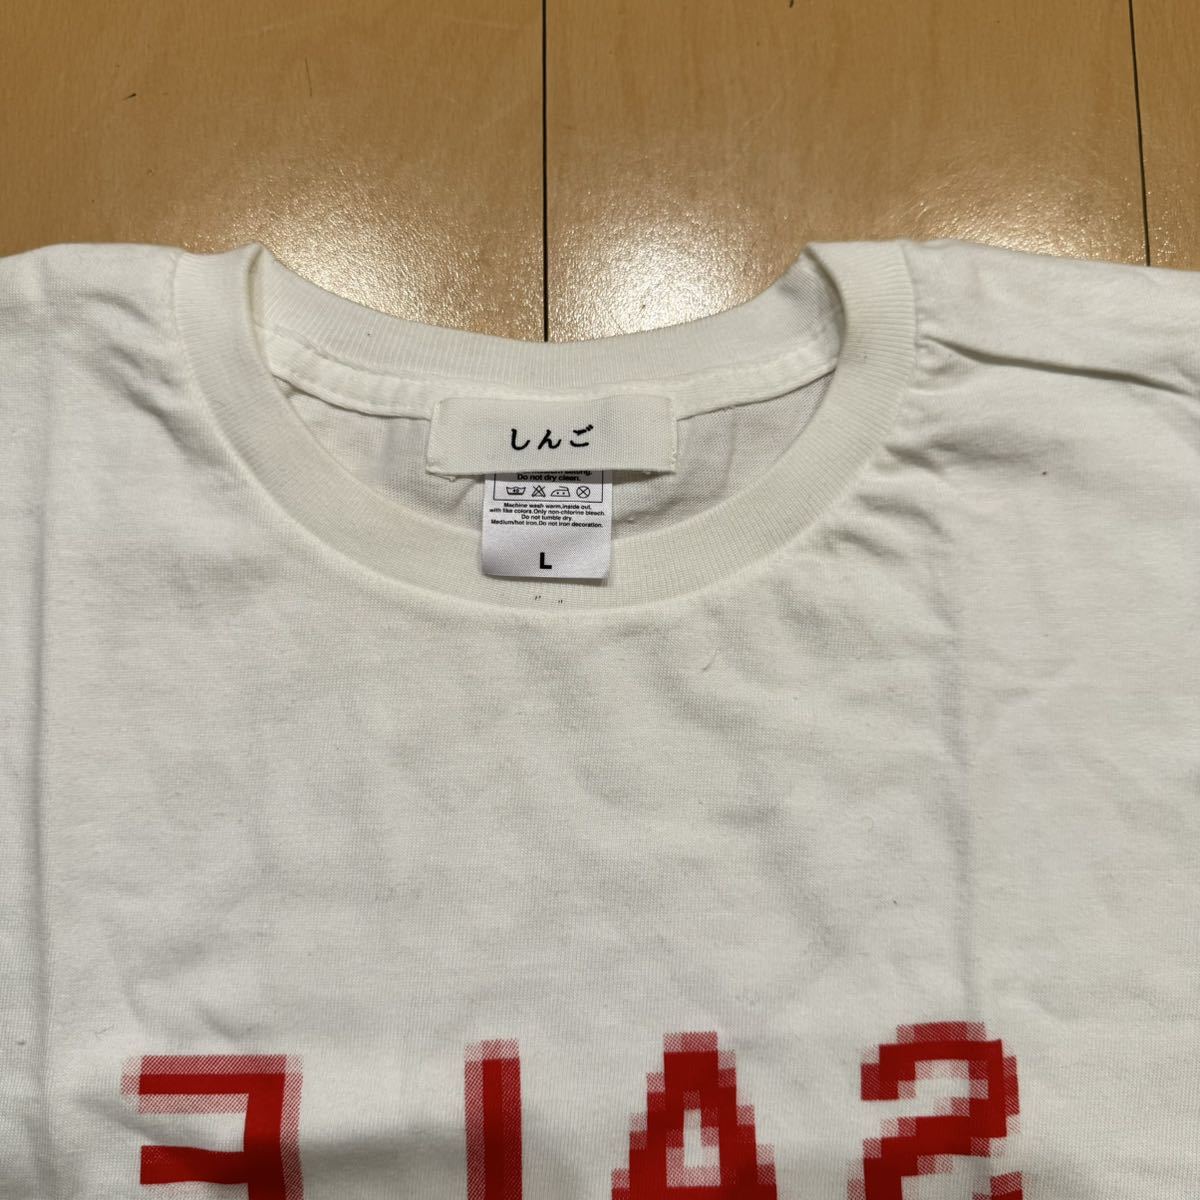 しんご SALE ピクセルロゴ Tシャツ サイズM相当 MADE IN USA 格安!_画像4